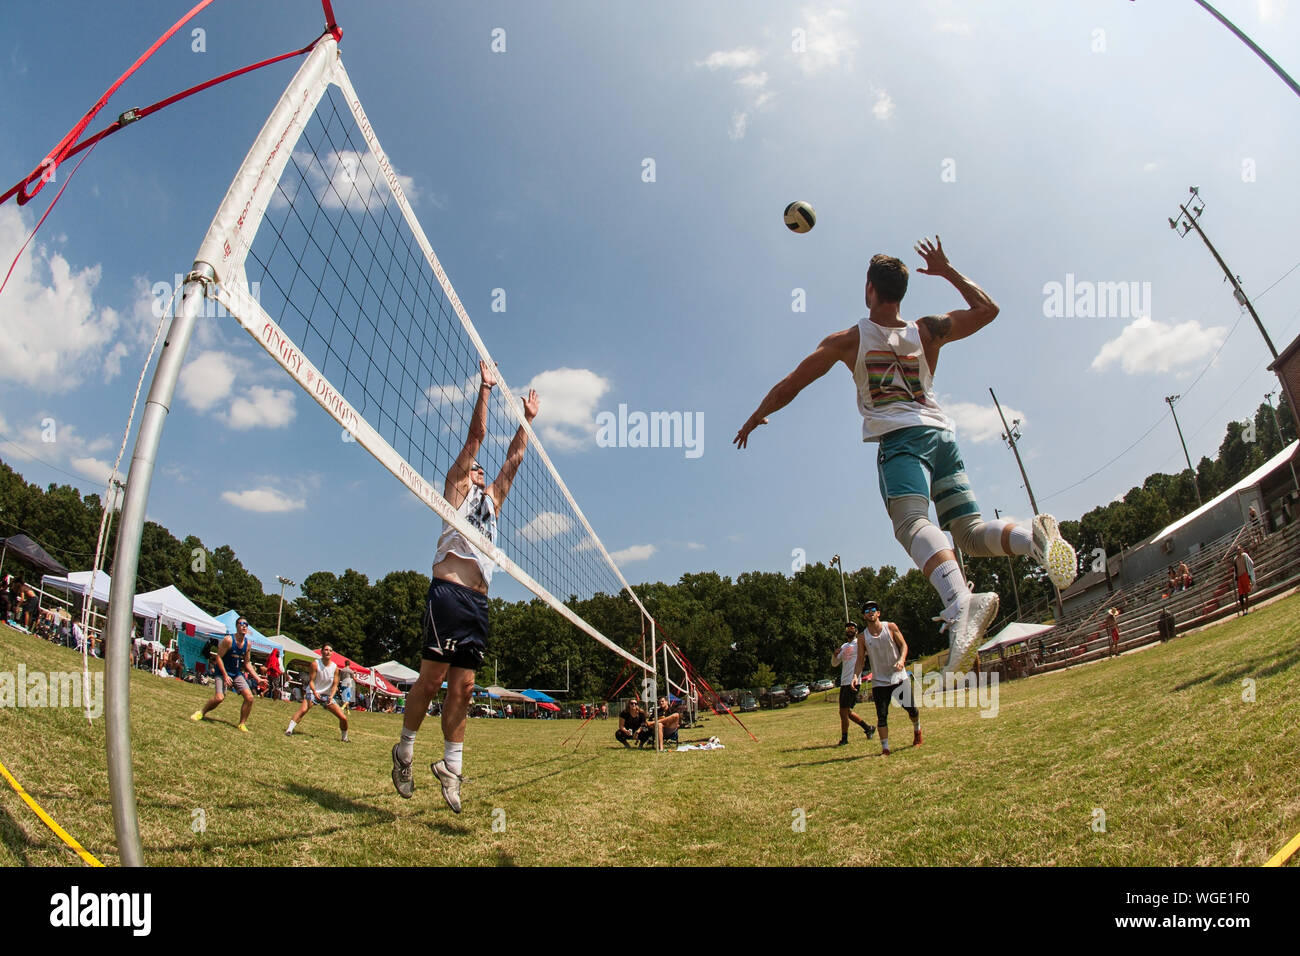 Un homme passe à spike haut la balle dans un tournoi de volley-ball, herbe triples avec trois équipes de personnes, le 25 août 2019 à Doraville, Géorgie. Banque D'Images